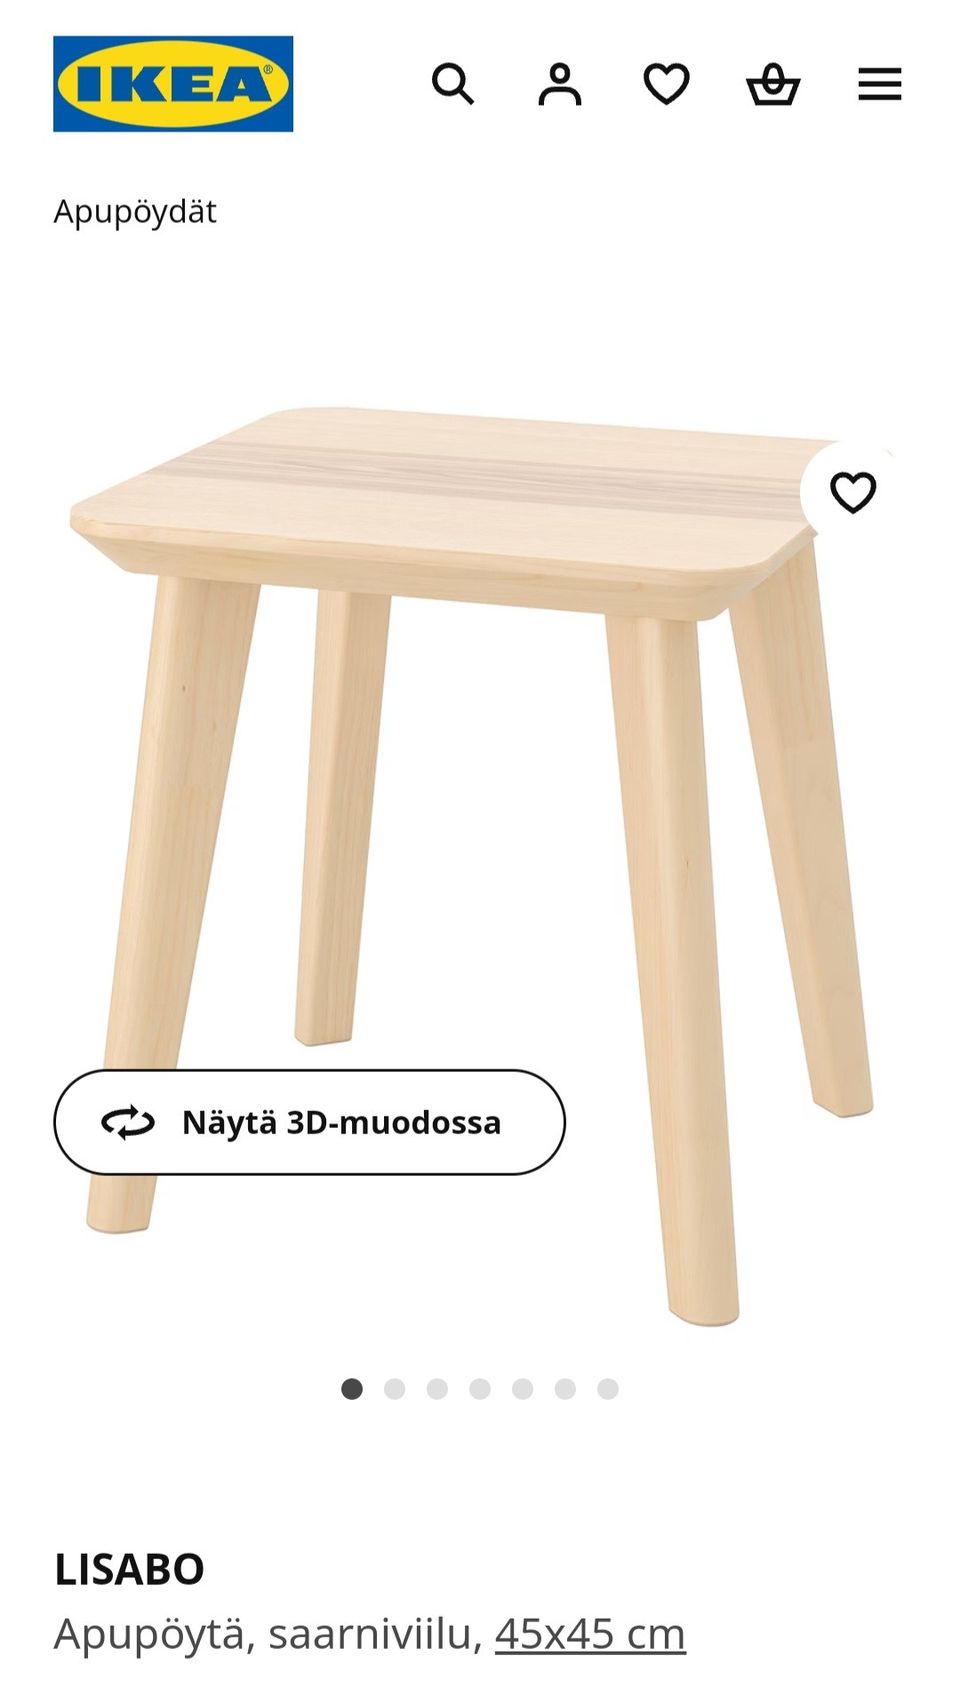 Ikea Lisabo pieni pöytä/ apupöytä